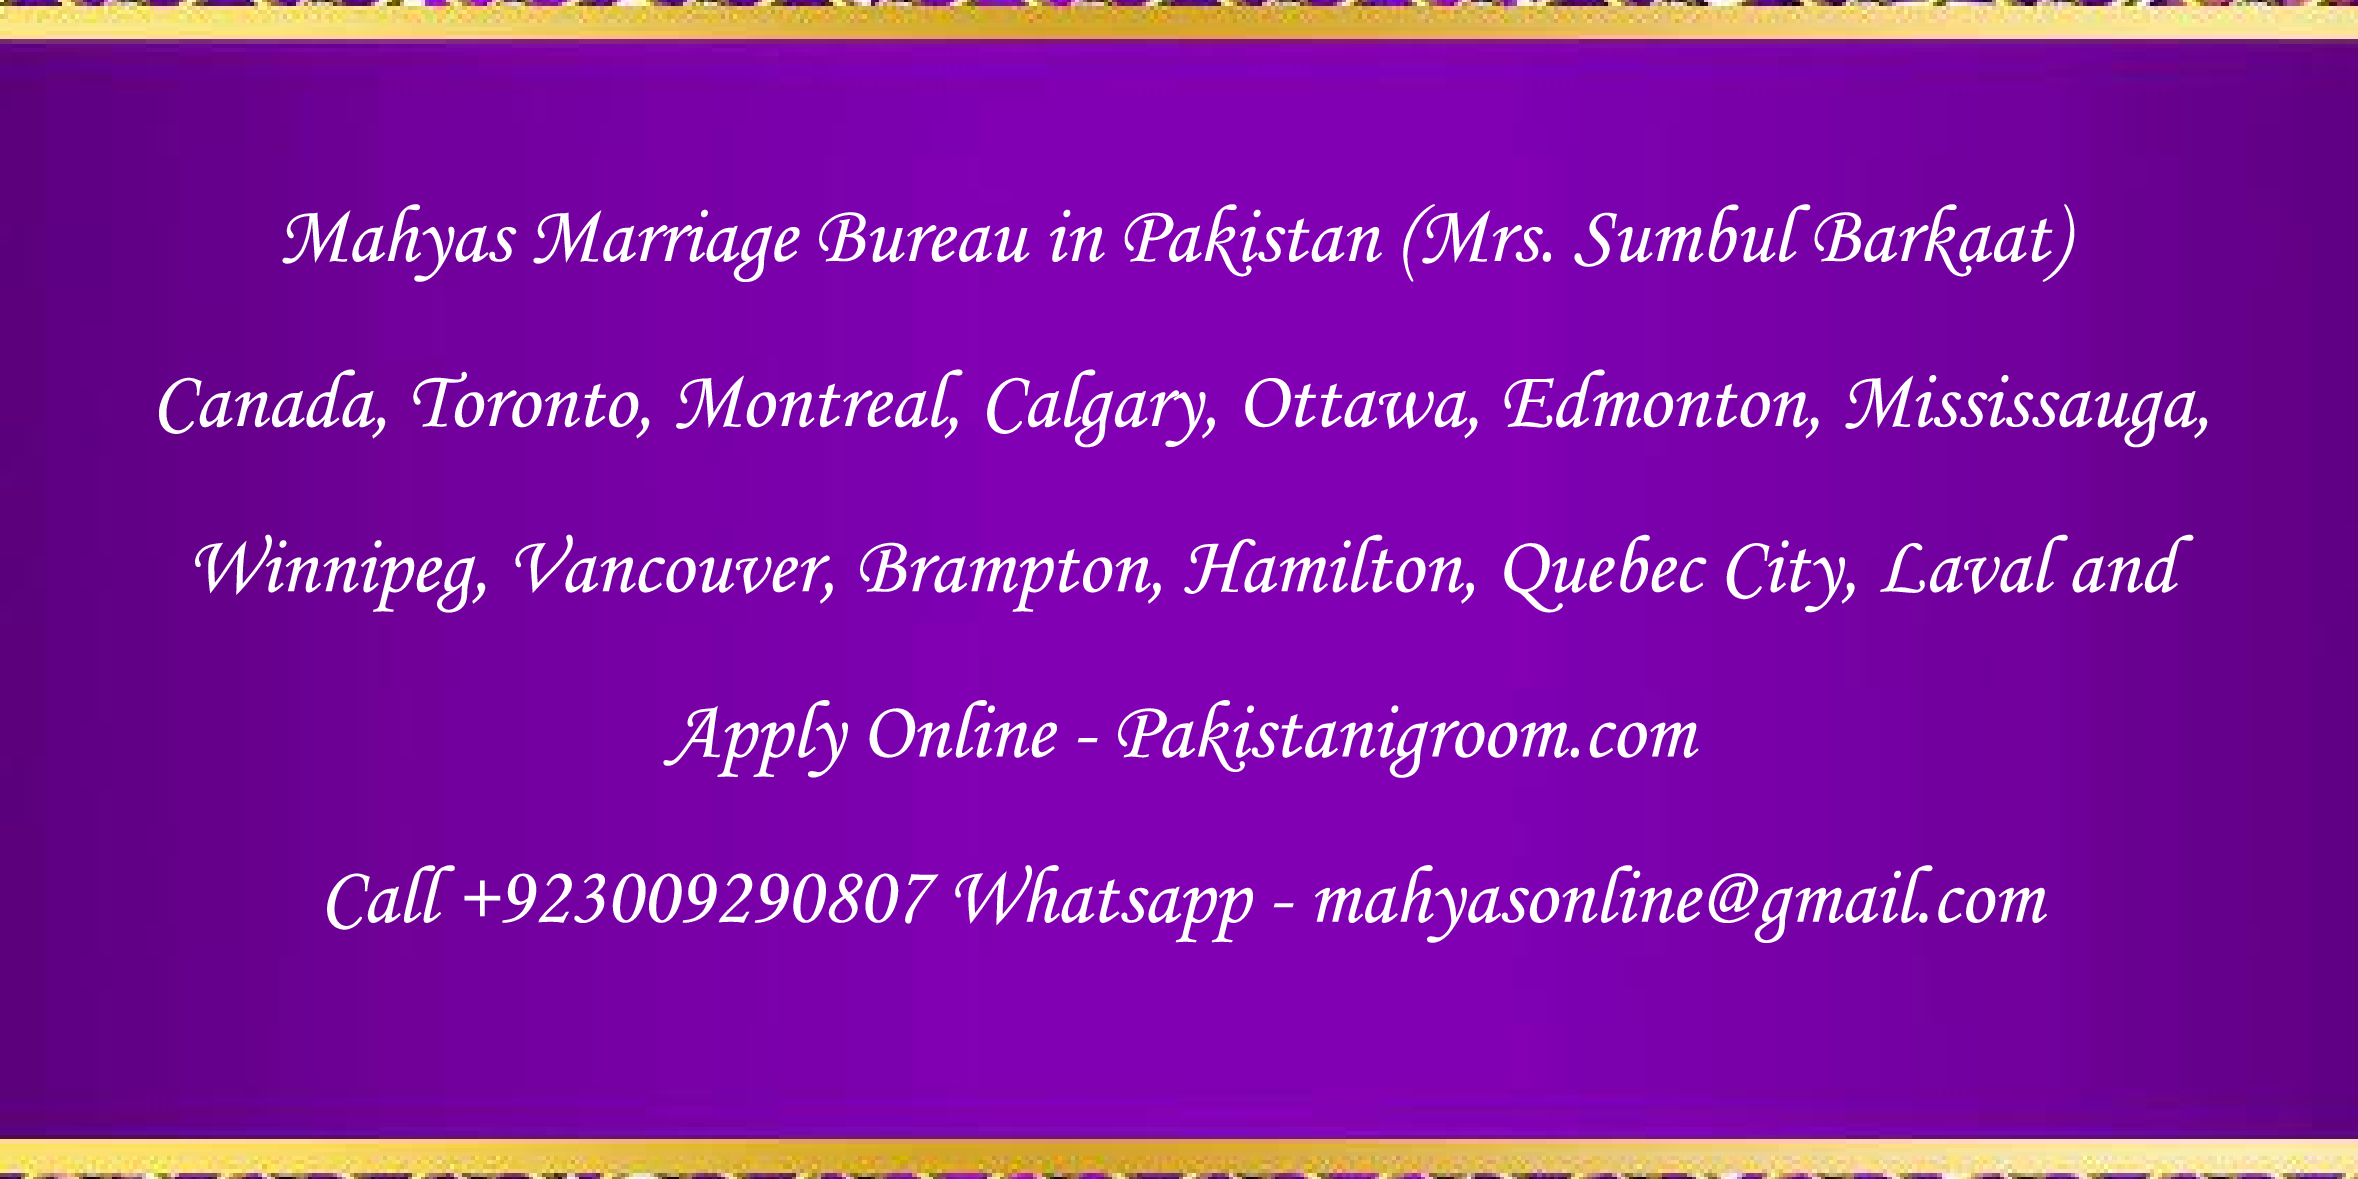 Mahyas-marriage-bureau-Karachi-Pakistan-for-Shia-Sunni-Remarriage-Divorce-Widow-Second-marriage-Punjabi-Pashto-Urdu-32.png